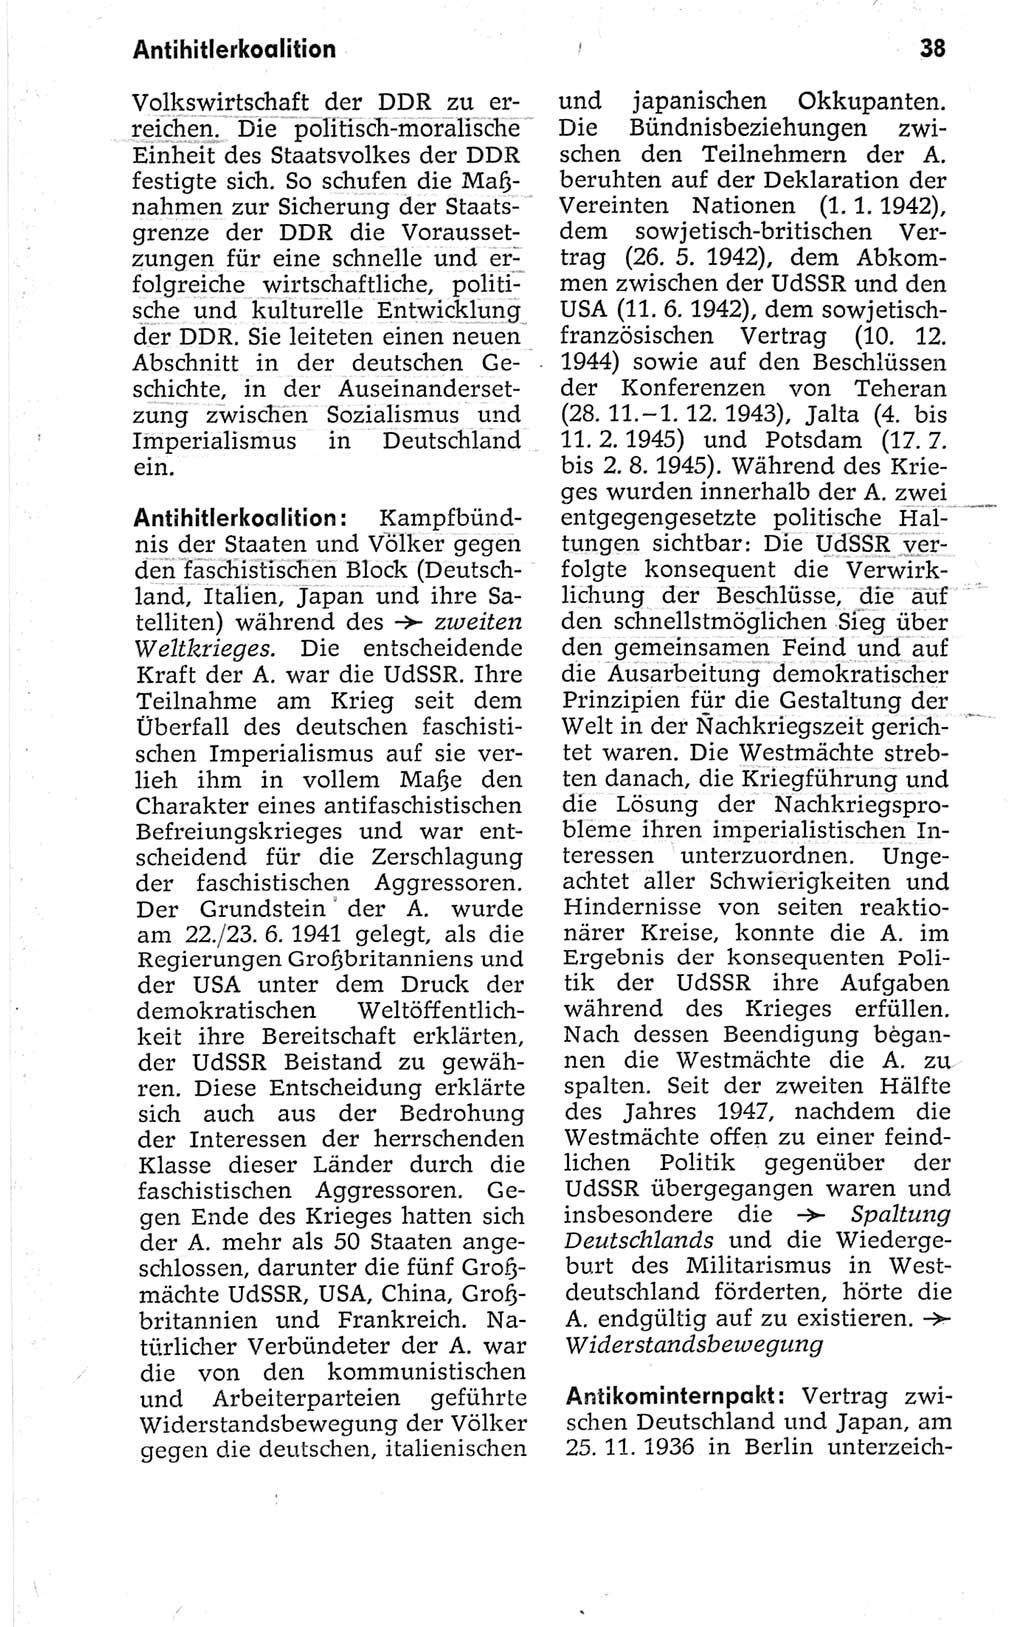 Kleines politisches Wörterbuch [Deutsche Demokratische Republik (DDR)] 1967, Seite 38 (Kl. pol. Wb. DDR 1967, S. 38)